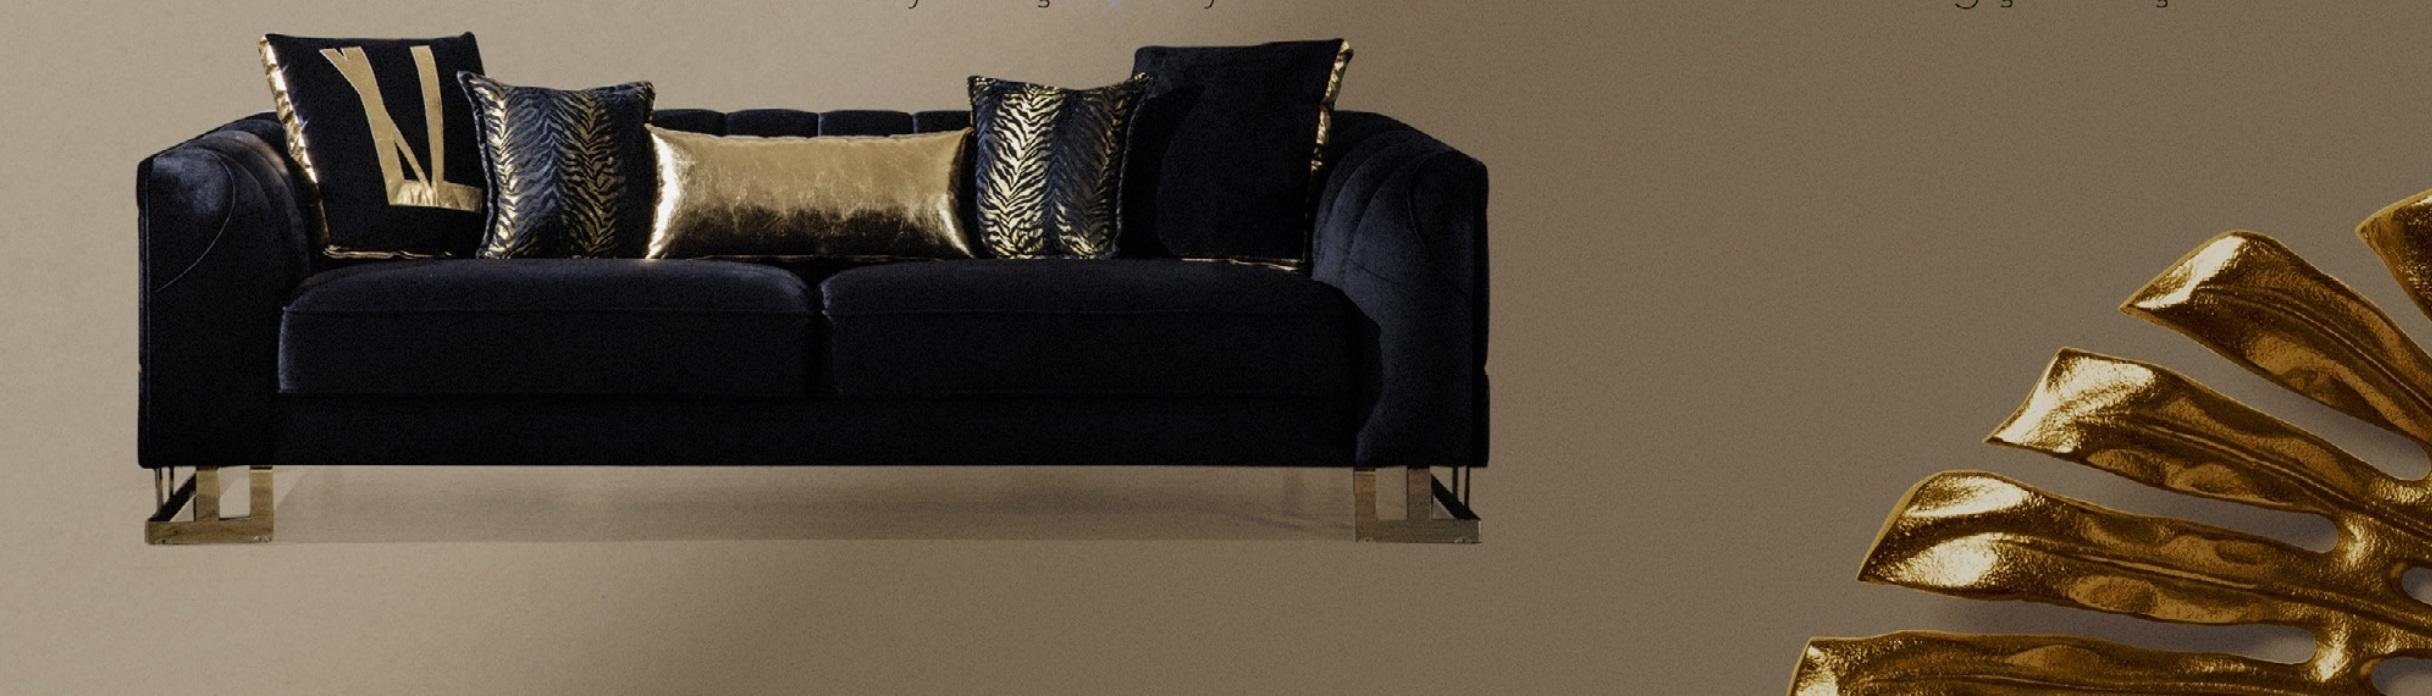 JVmoebel Sofa Sofa Couch Polster Textil italienischer Stil Möbel Sitzer 3Sitzer